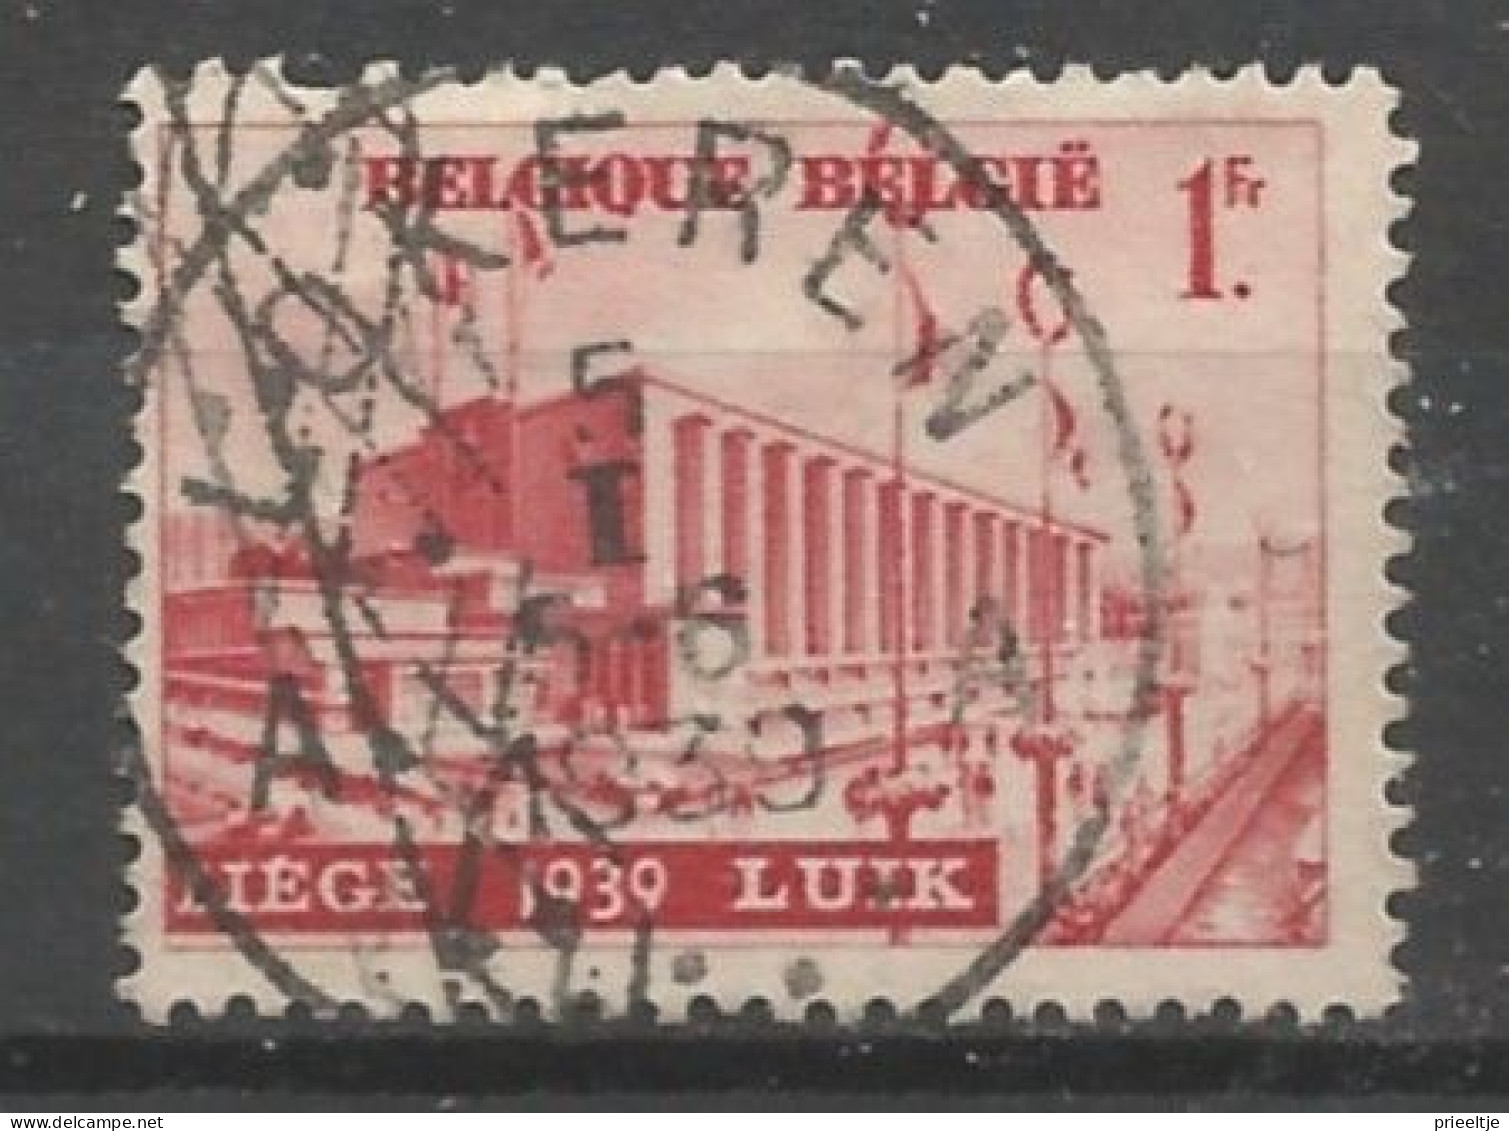 Belgie 1938  Luik OCB 485 (0) - Oblitérés